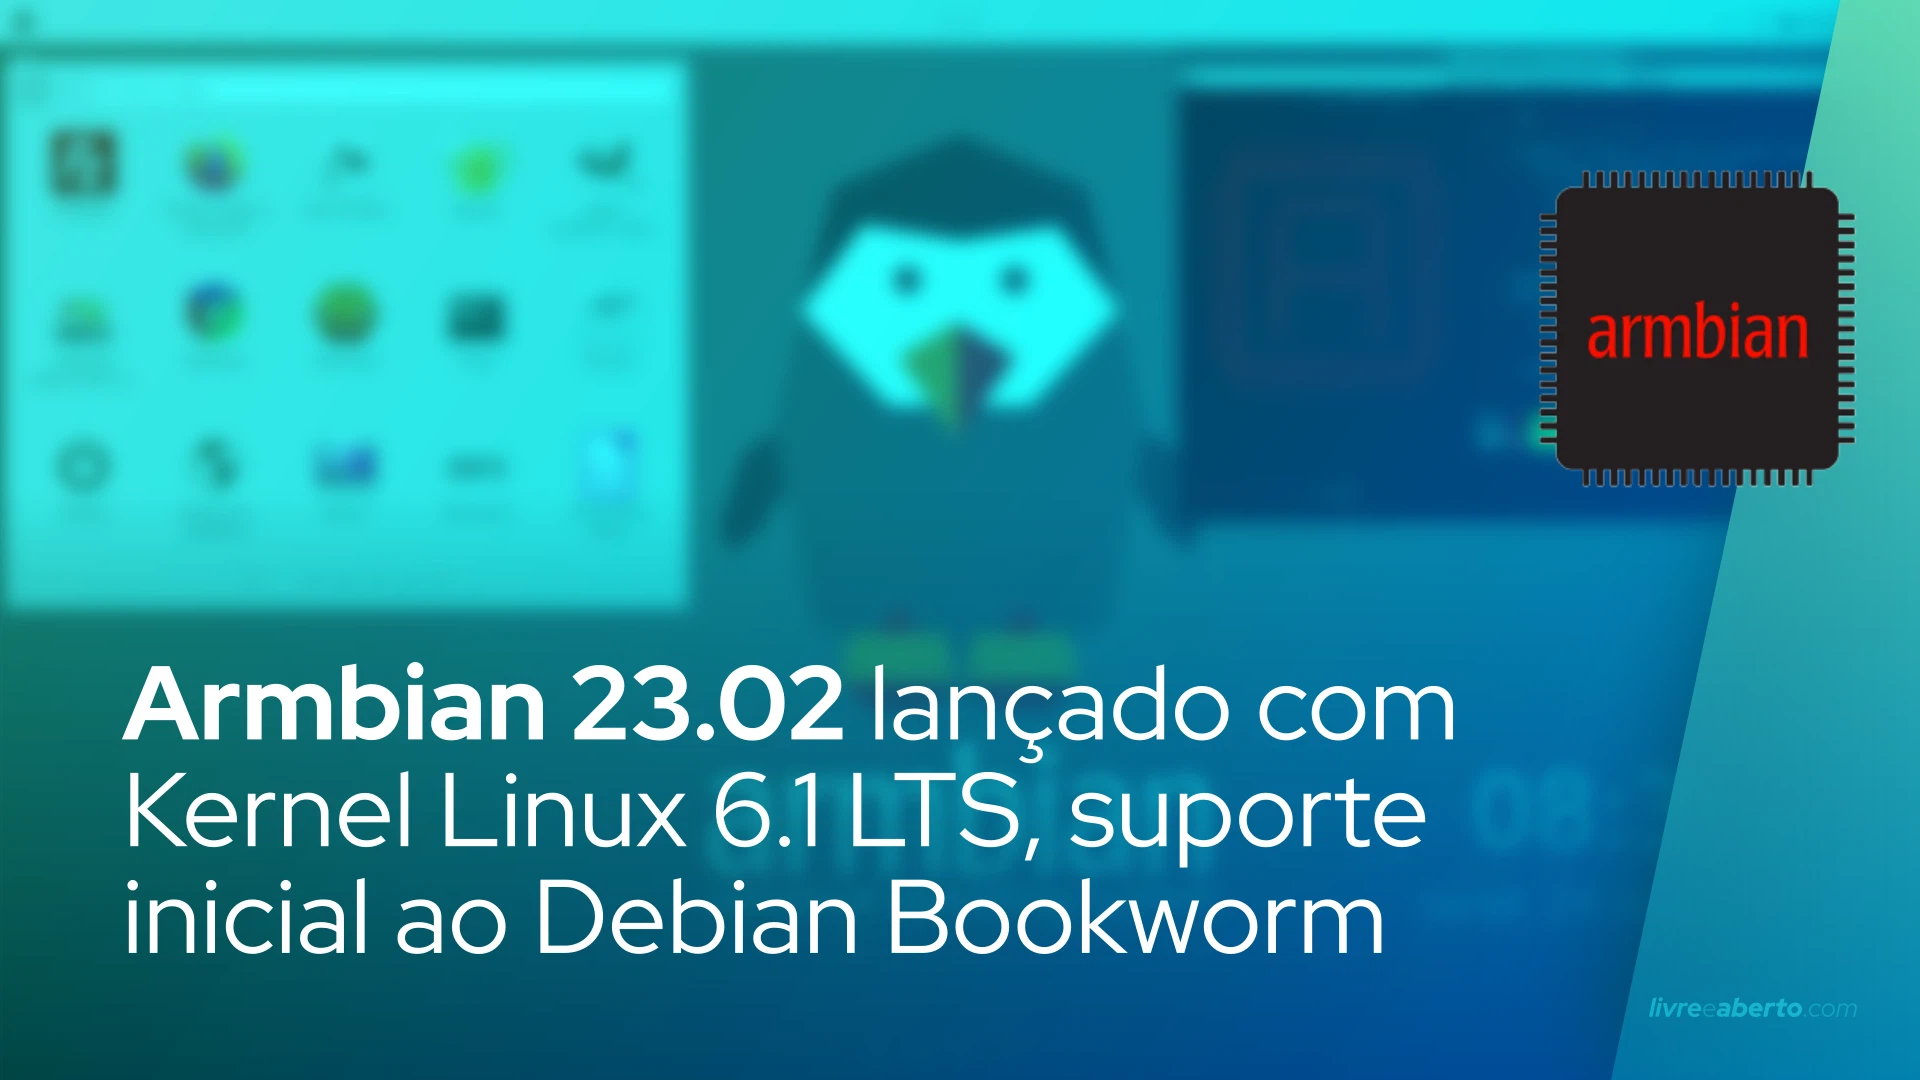 Armbian 23.02 lançado com Kernel Linux 6.1 LTS, suporte inicial ao Debian Bookworm